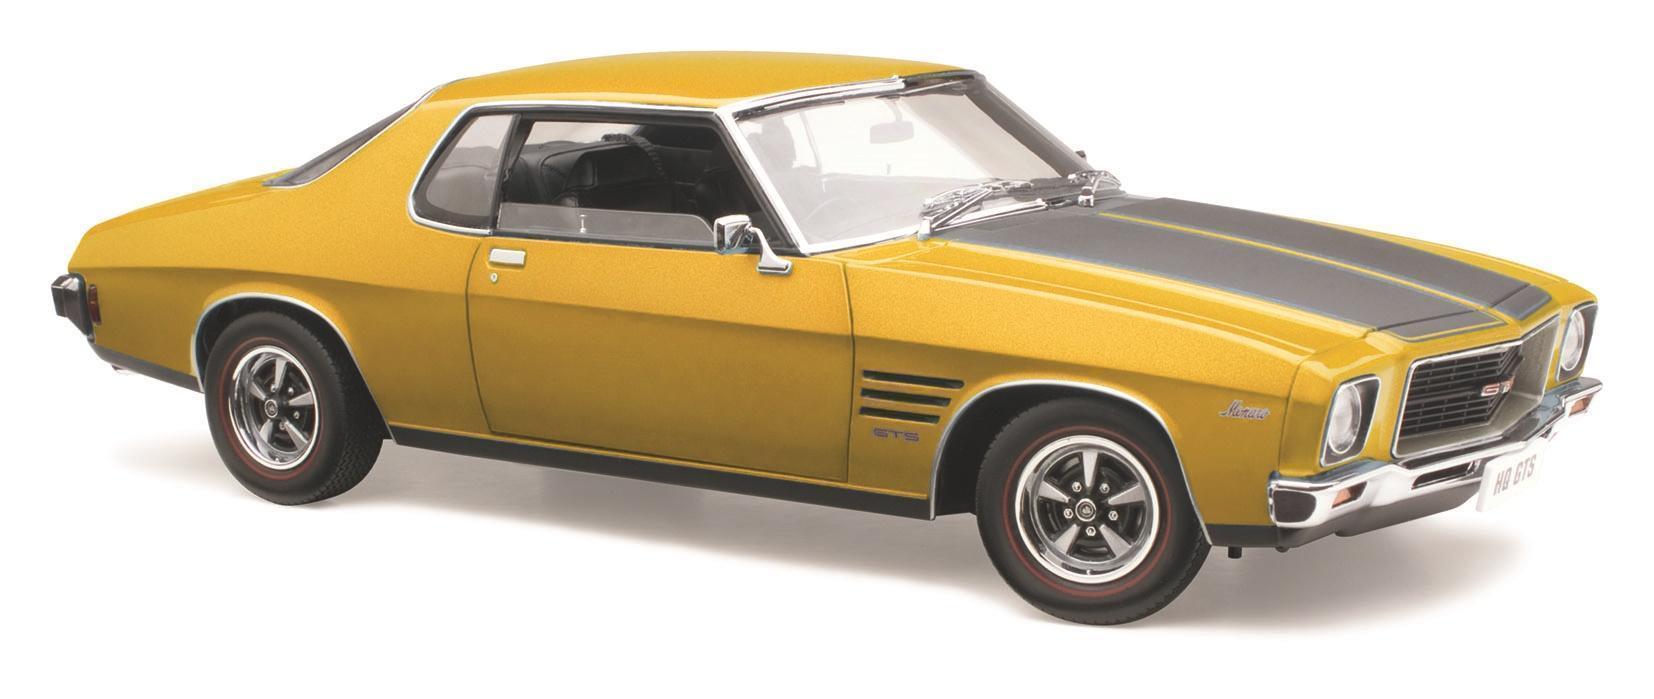 Holden HQ GTS Monaro Mustard 1:18 Die Cast Model Car 